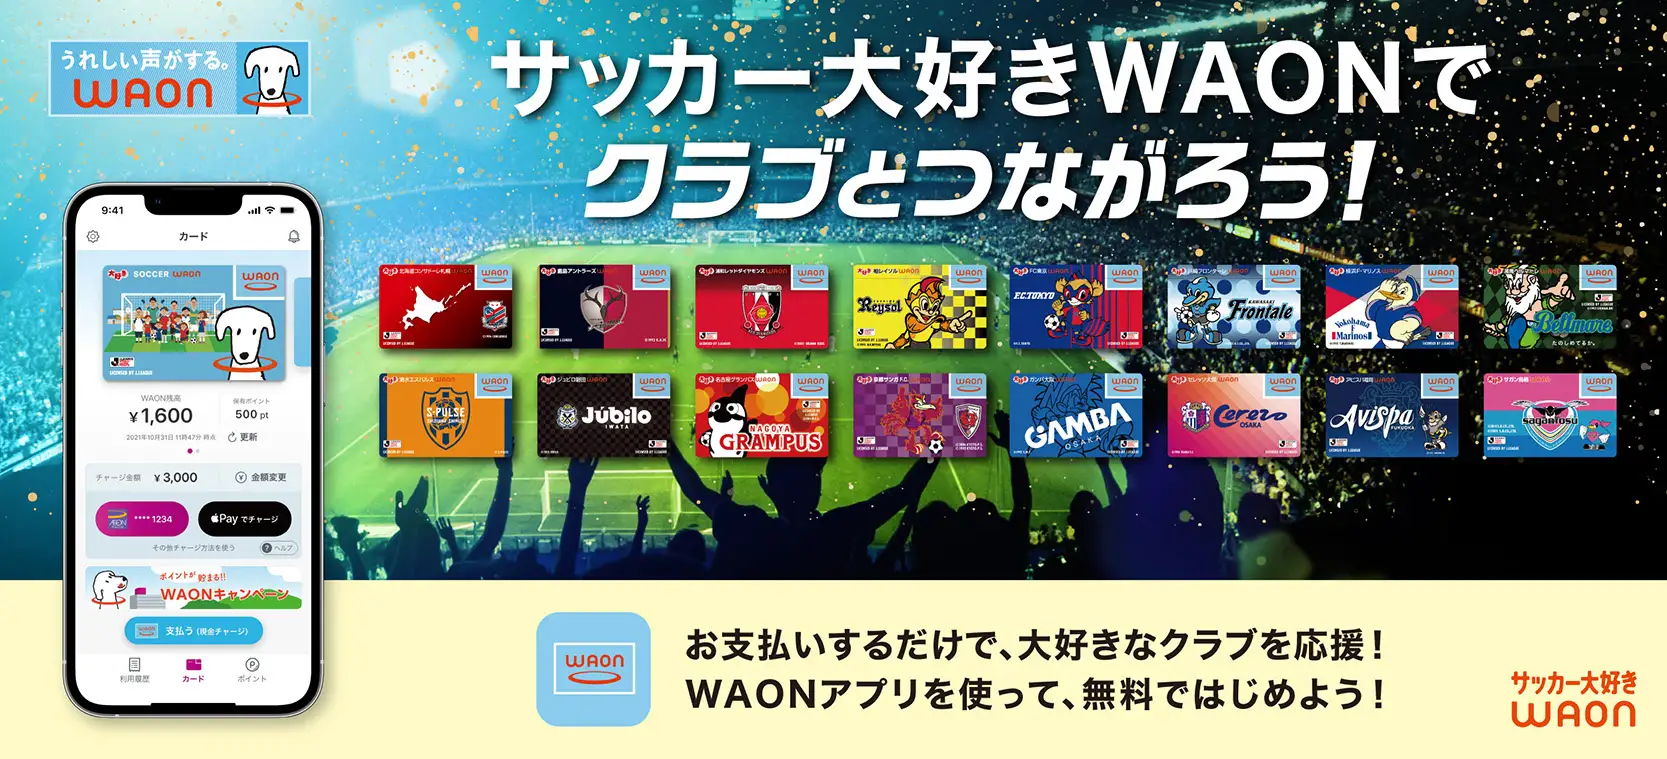 「サッカー大好きＷＡＯＮ」発行記念キャンペーンで3000円以上利用で先着3万名に150WAON POINTがもらえる。抽選でも6000名に当たる。4/27～5/22。